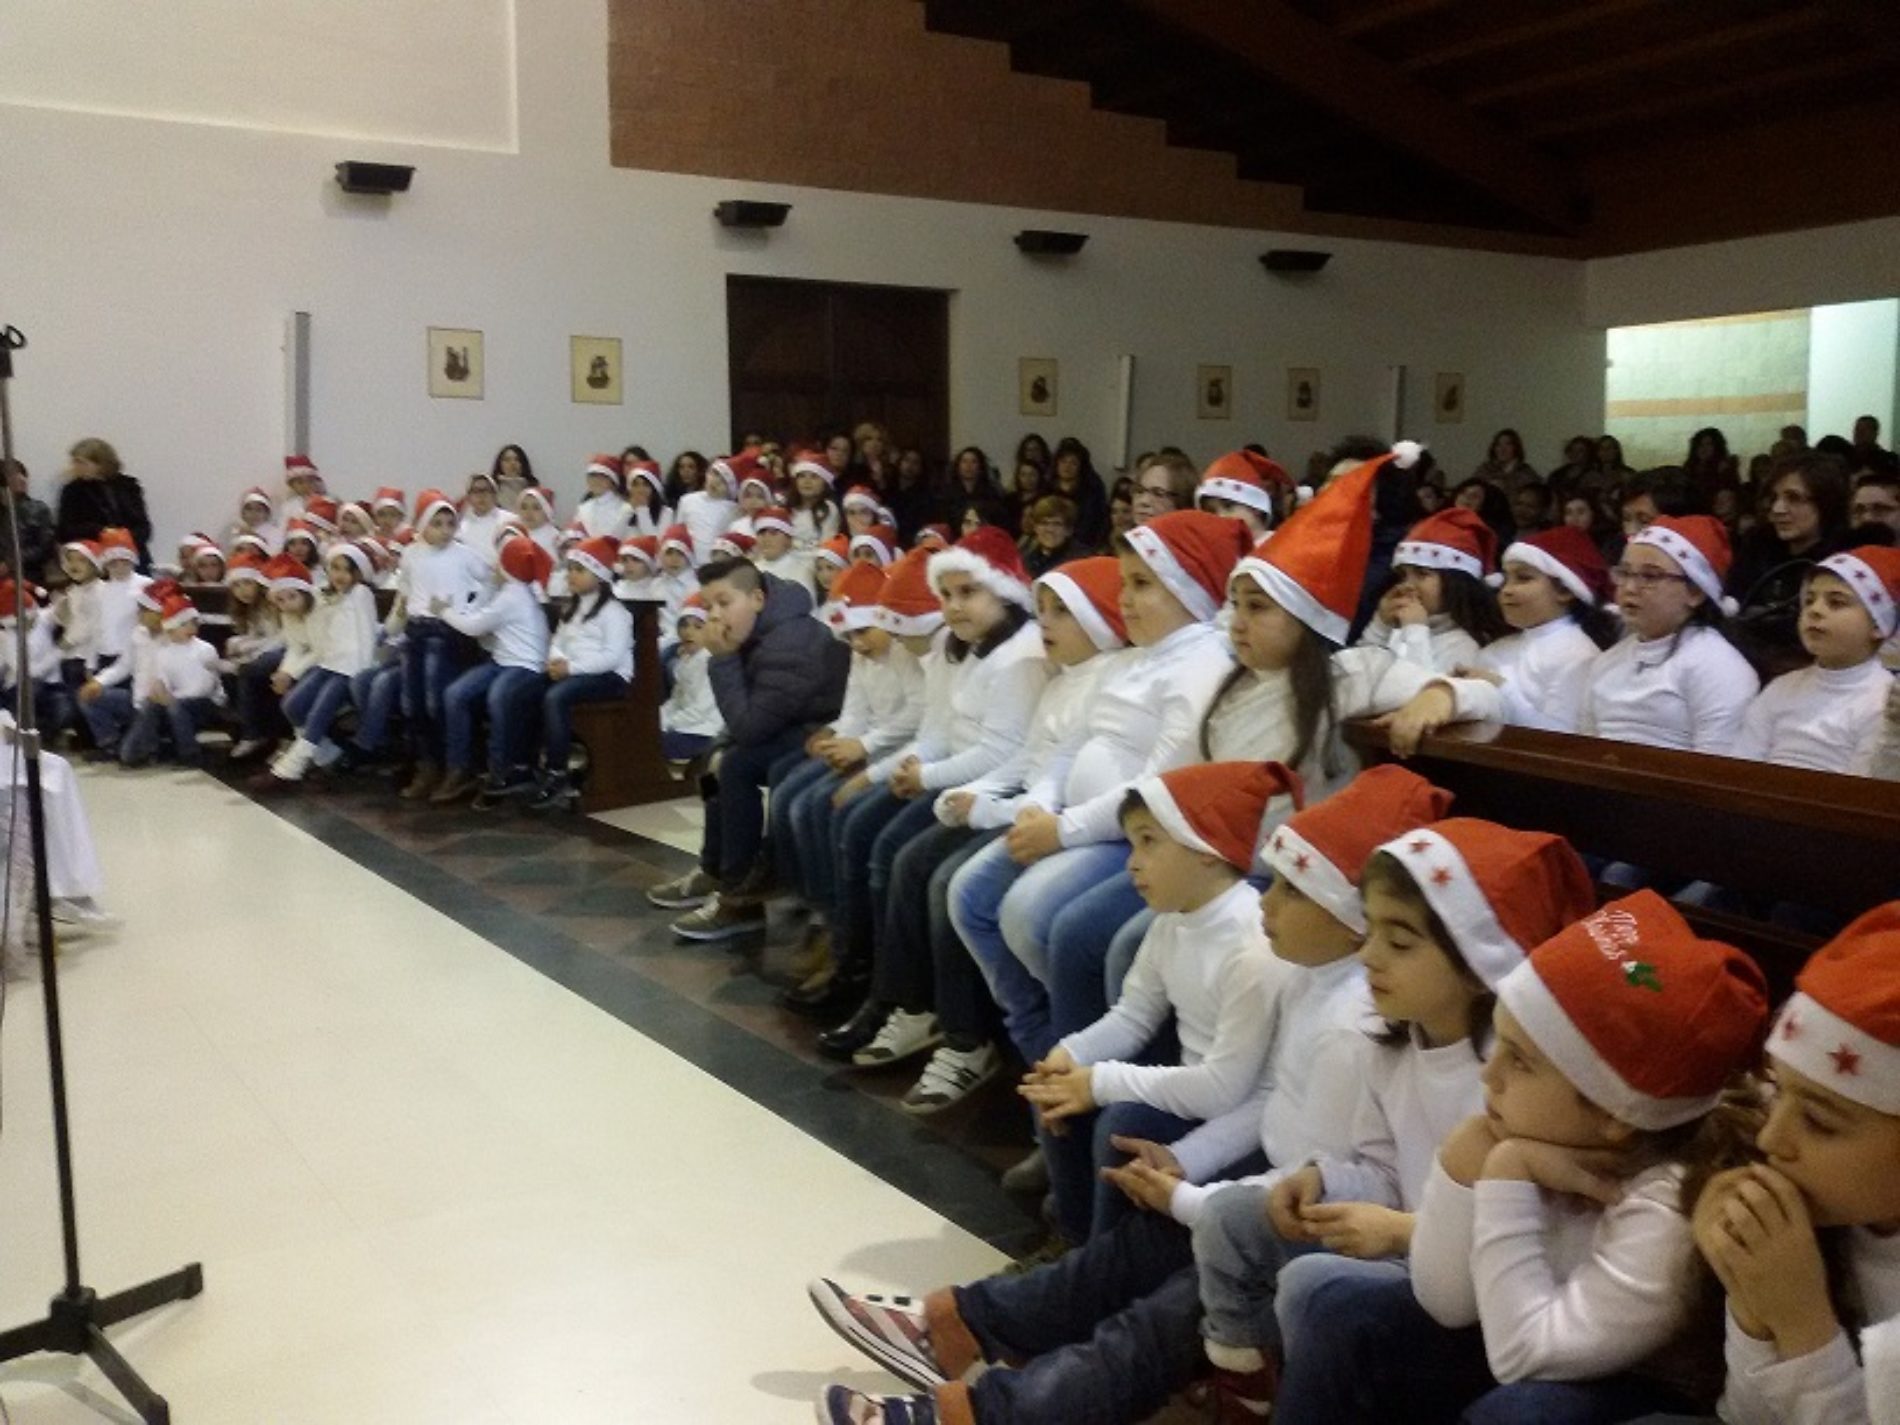 Concerto natalizio degli alunni del San Giovanni Bosco” per cancellare l’indifferenza e la cattiveria e donare pace, risate e allegria